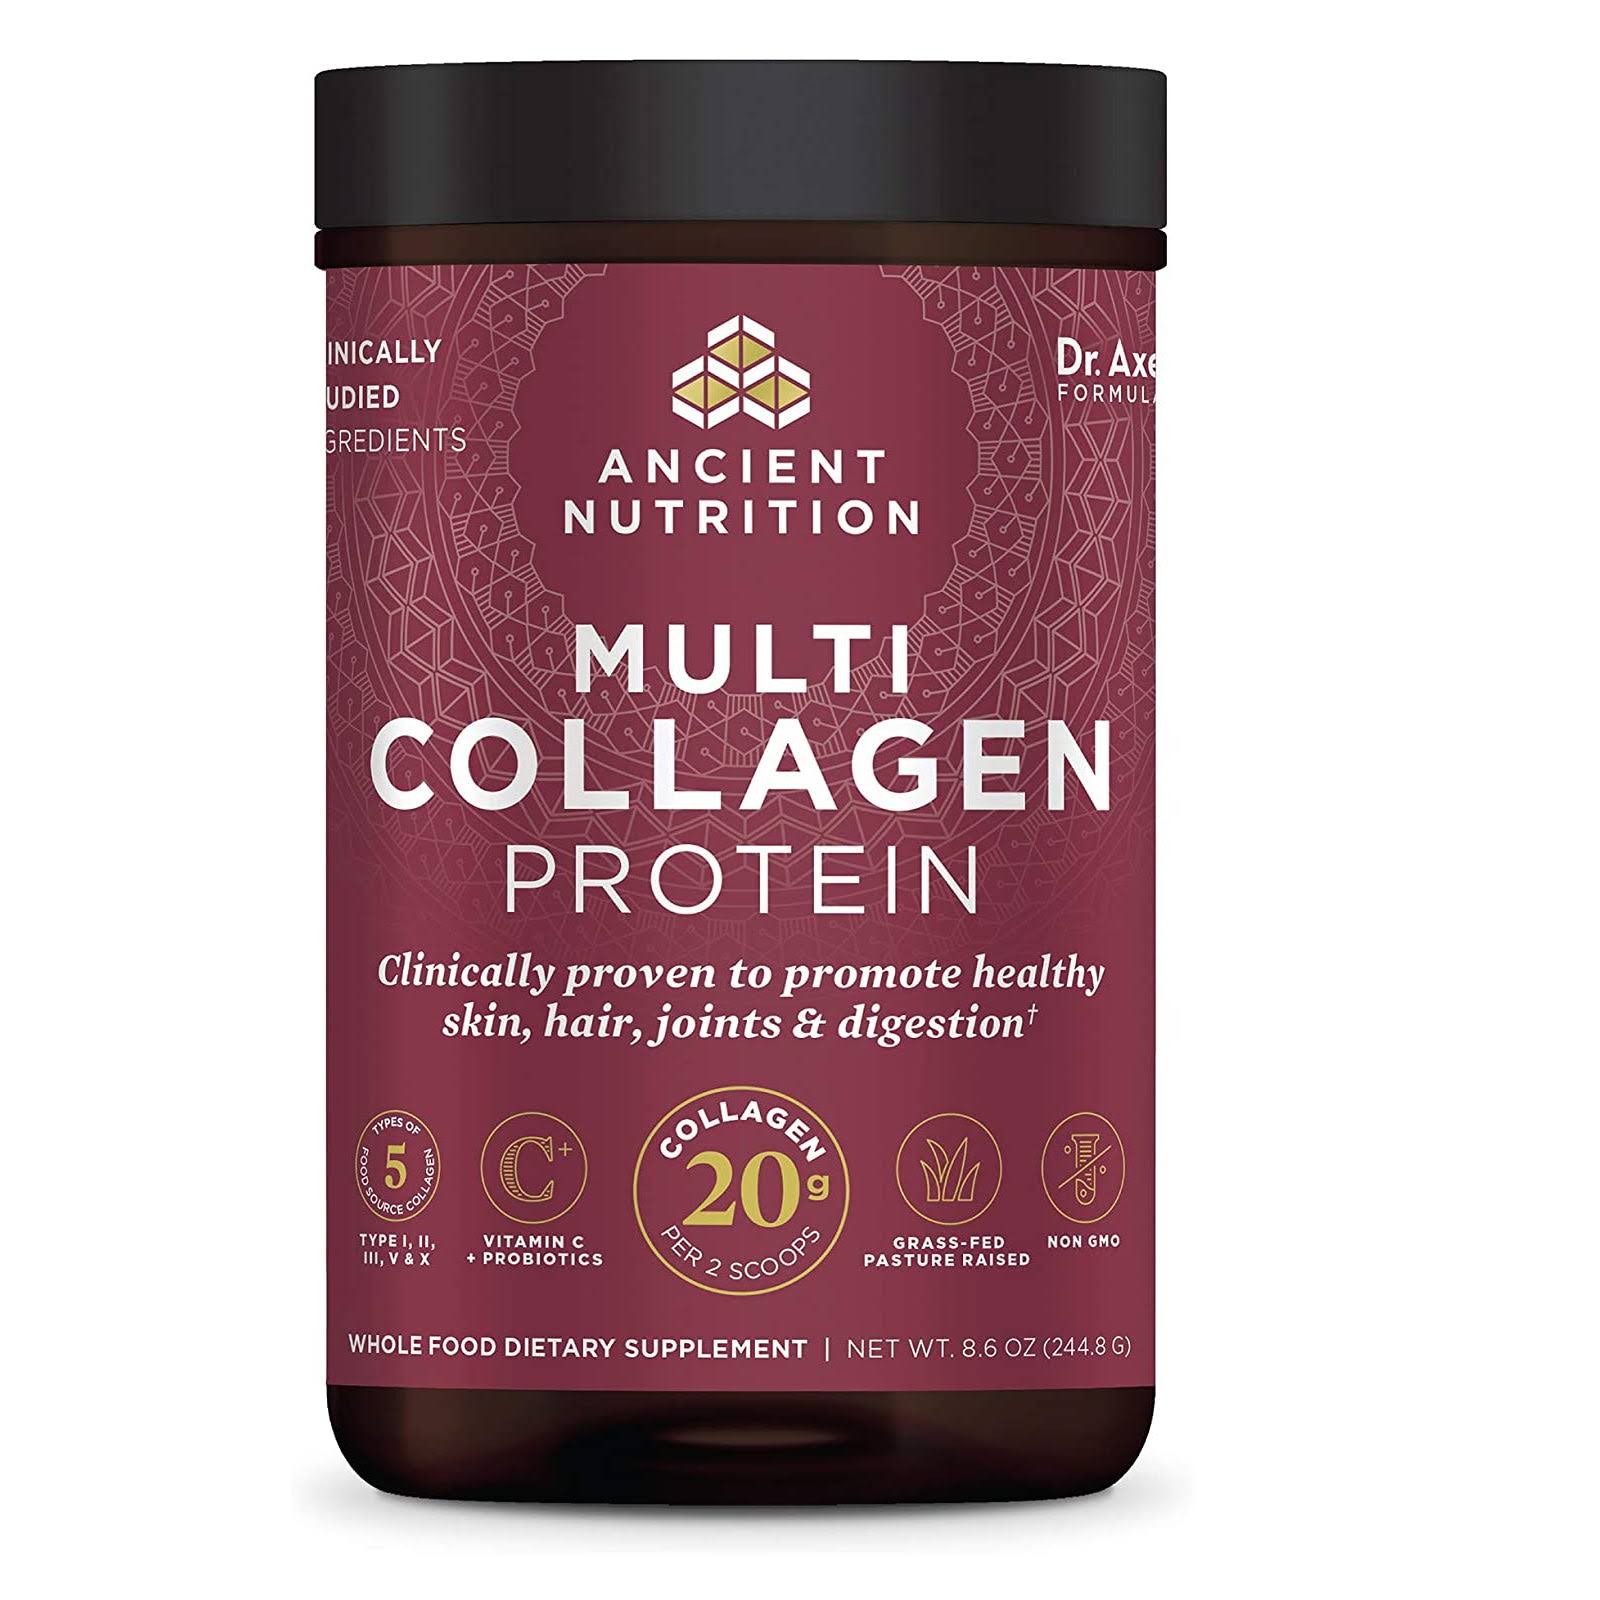 Ancient Nutrition MultiCollagen Protein Powder Supplement - 8.6oz